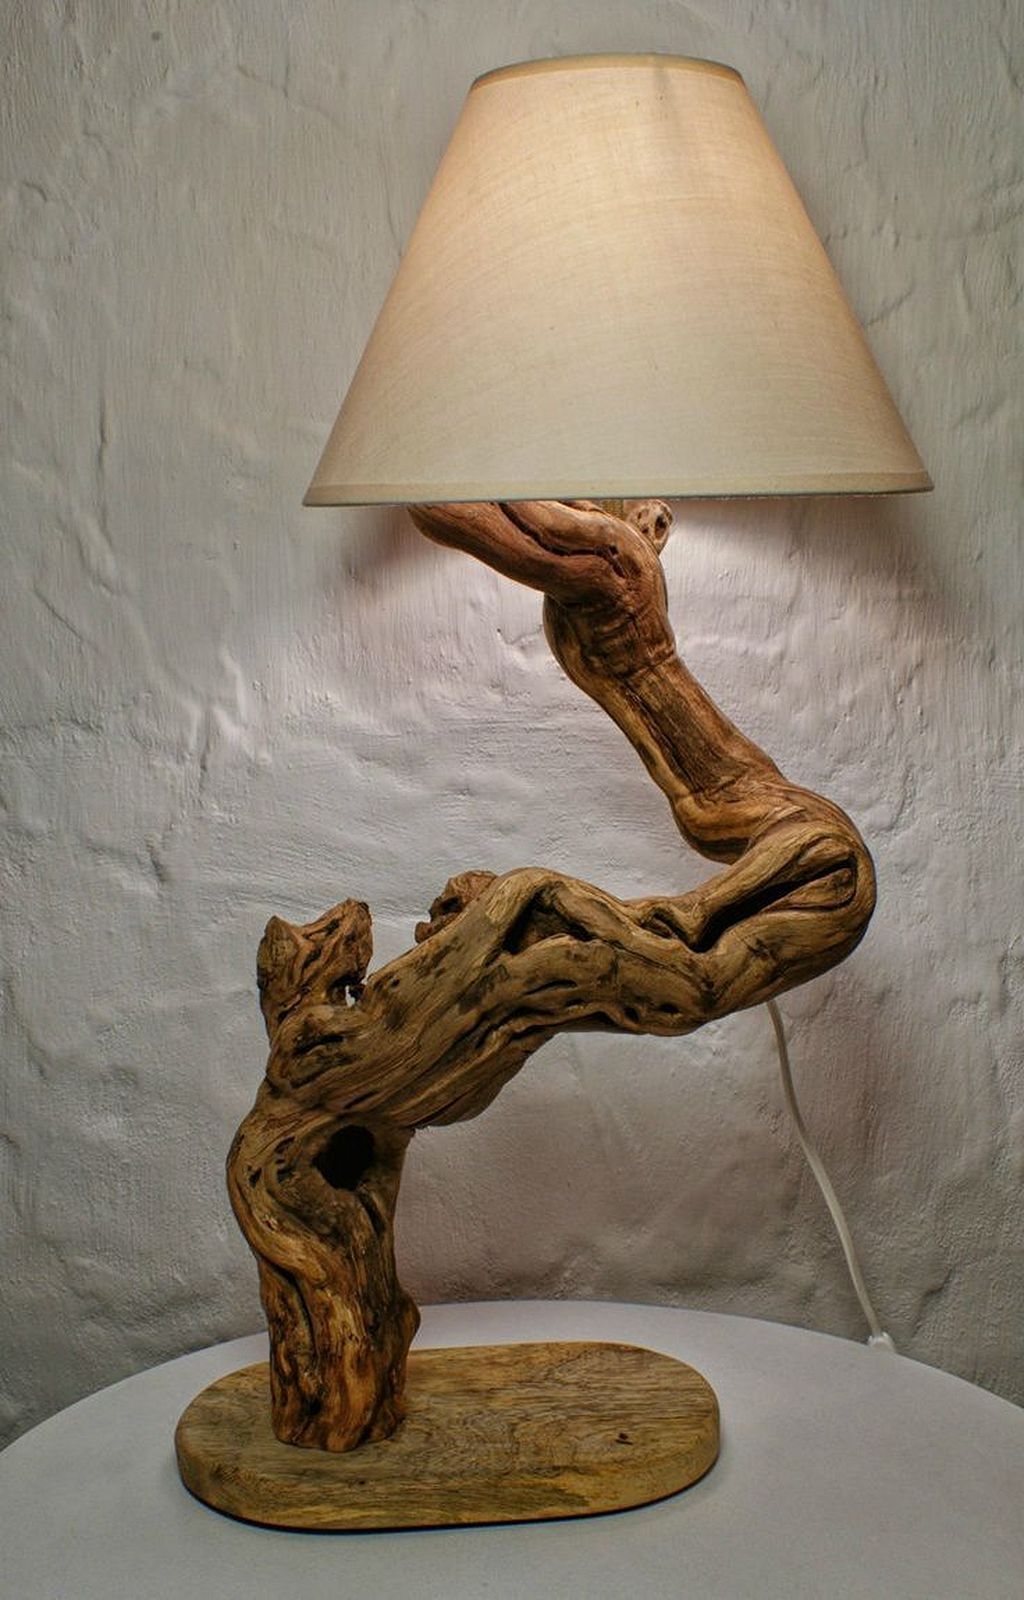 Driftwood lamp sculpture mother nature